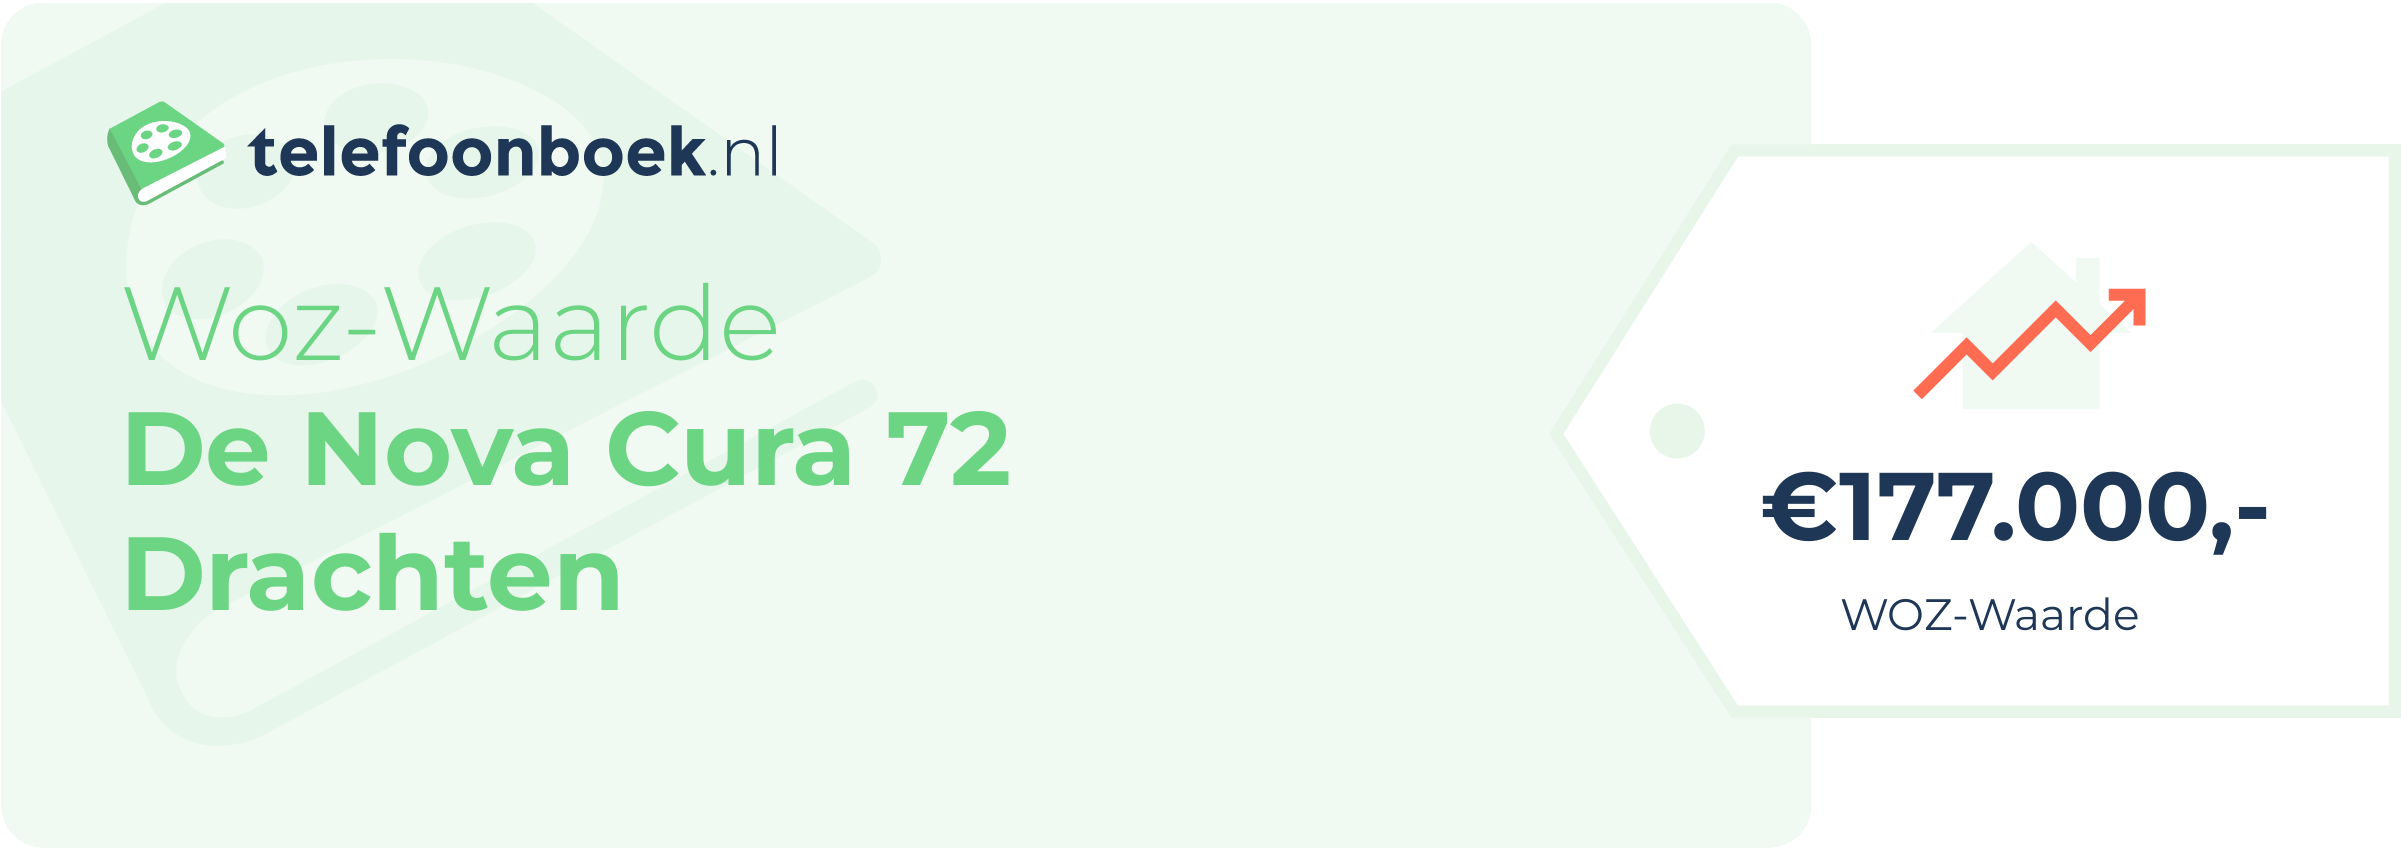 WOZ-waarde De Nova Cura 72 Drachten